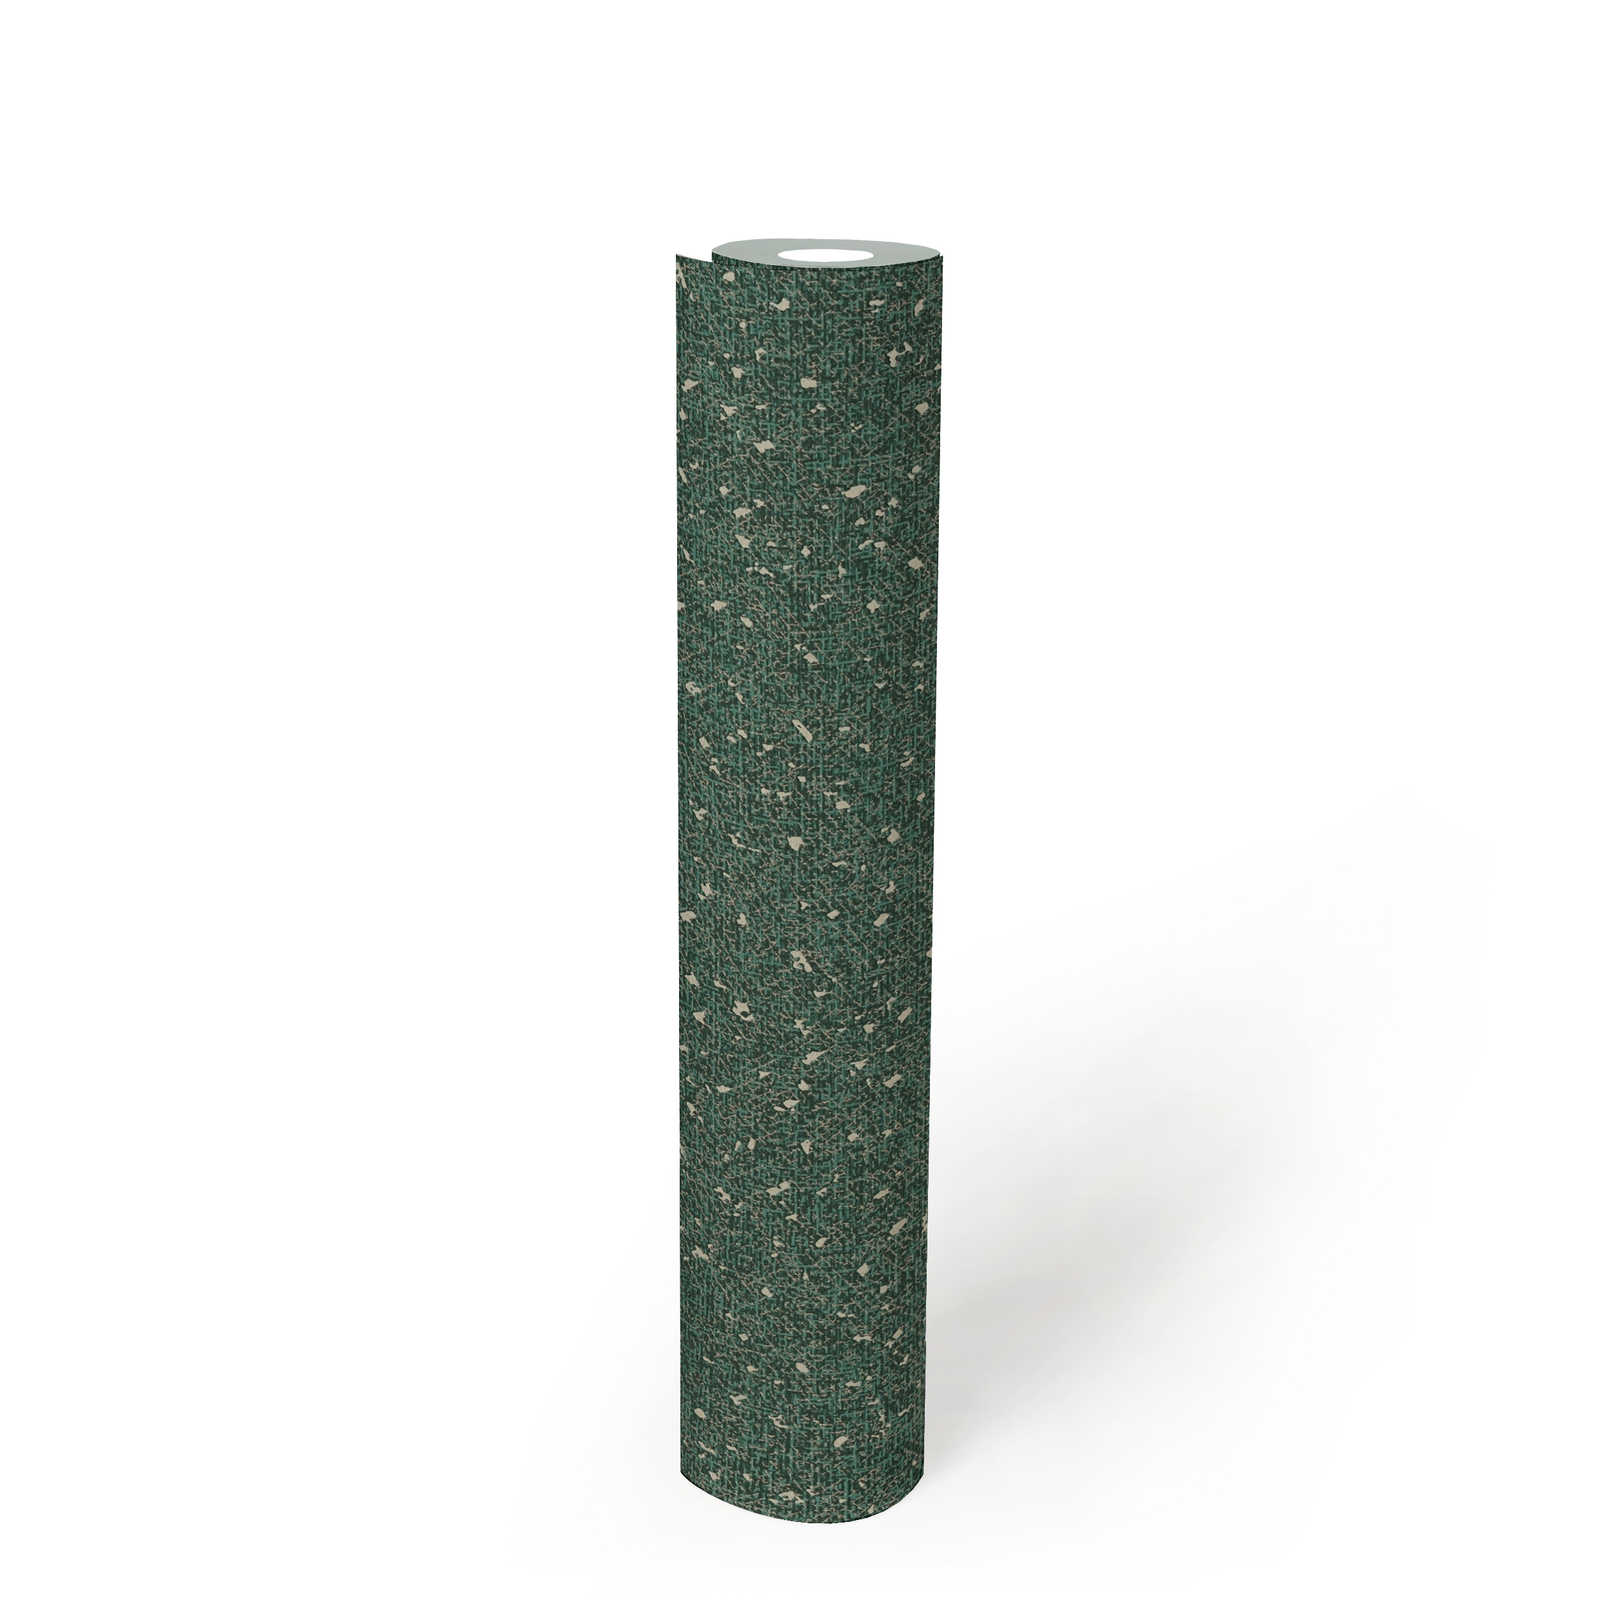             Tapete mit textiler Struktur und Metallic Akzent – Grün, Metallic
        